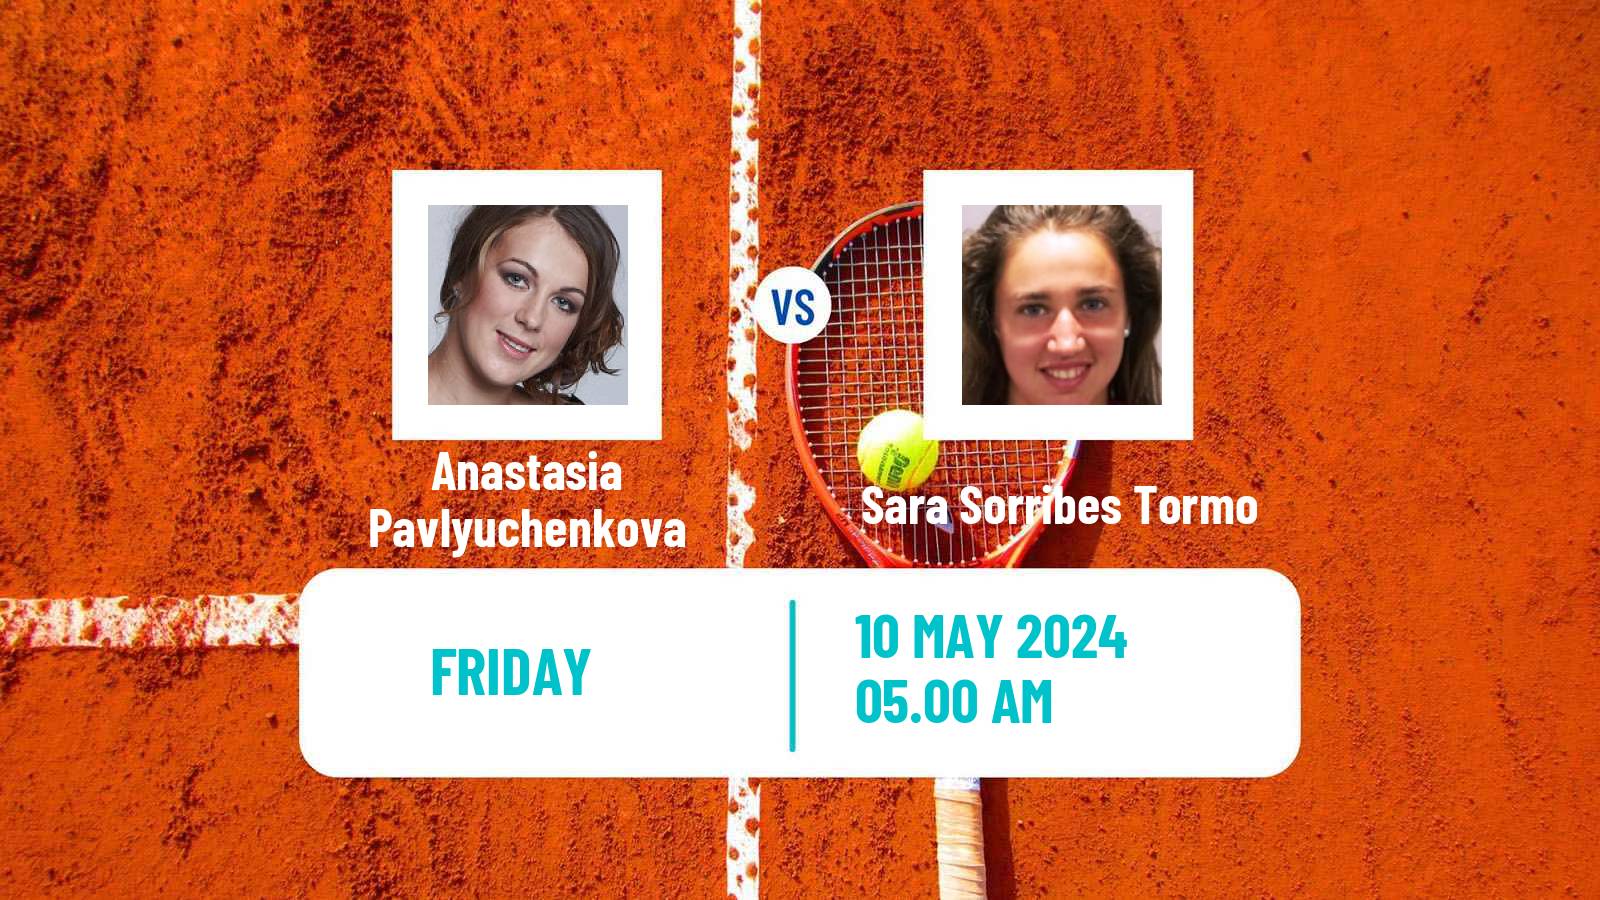 Tennis WTA Roma Anastasia Pavlyuchenkova - Sara Sorribes Tormo